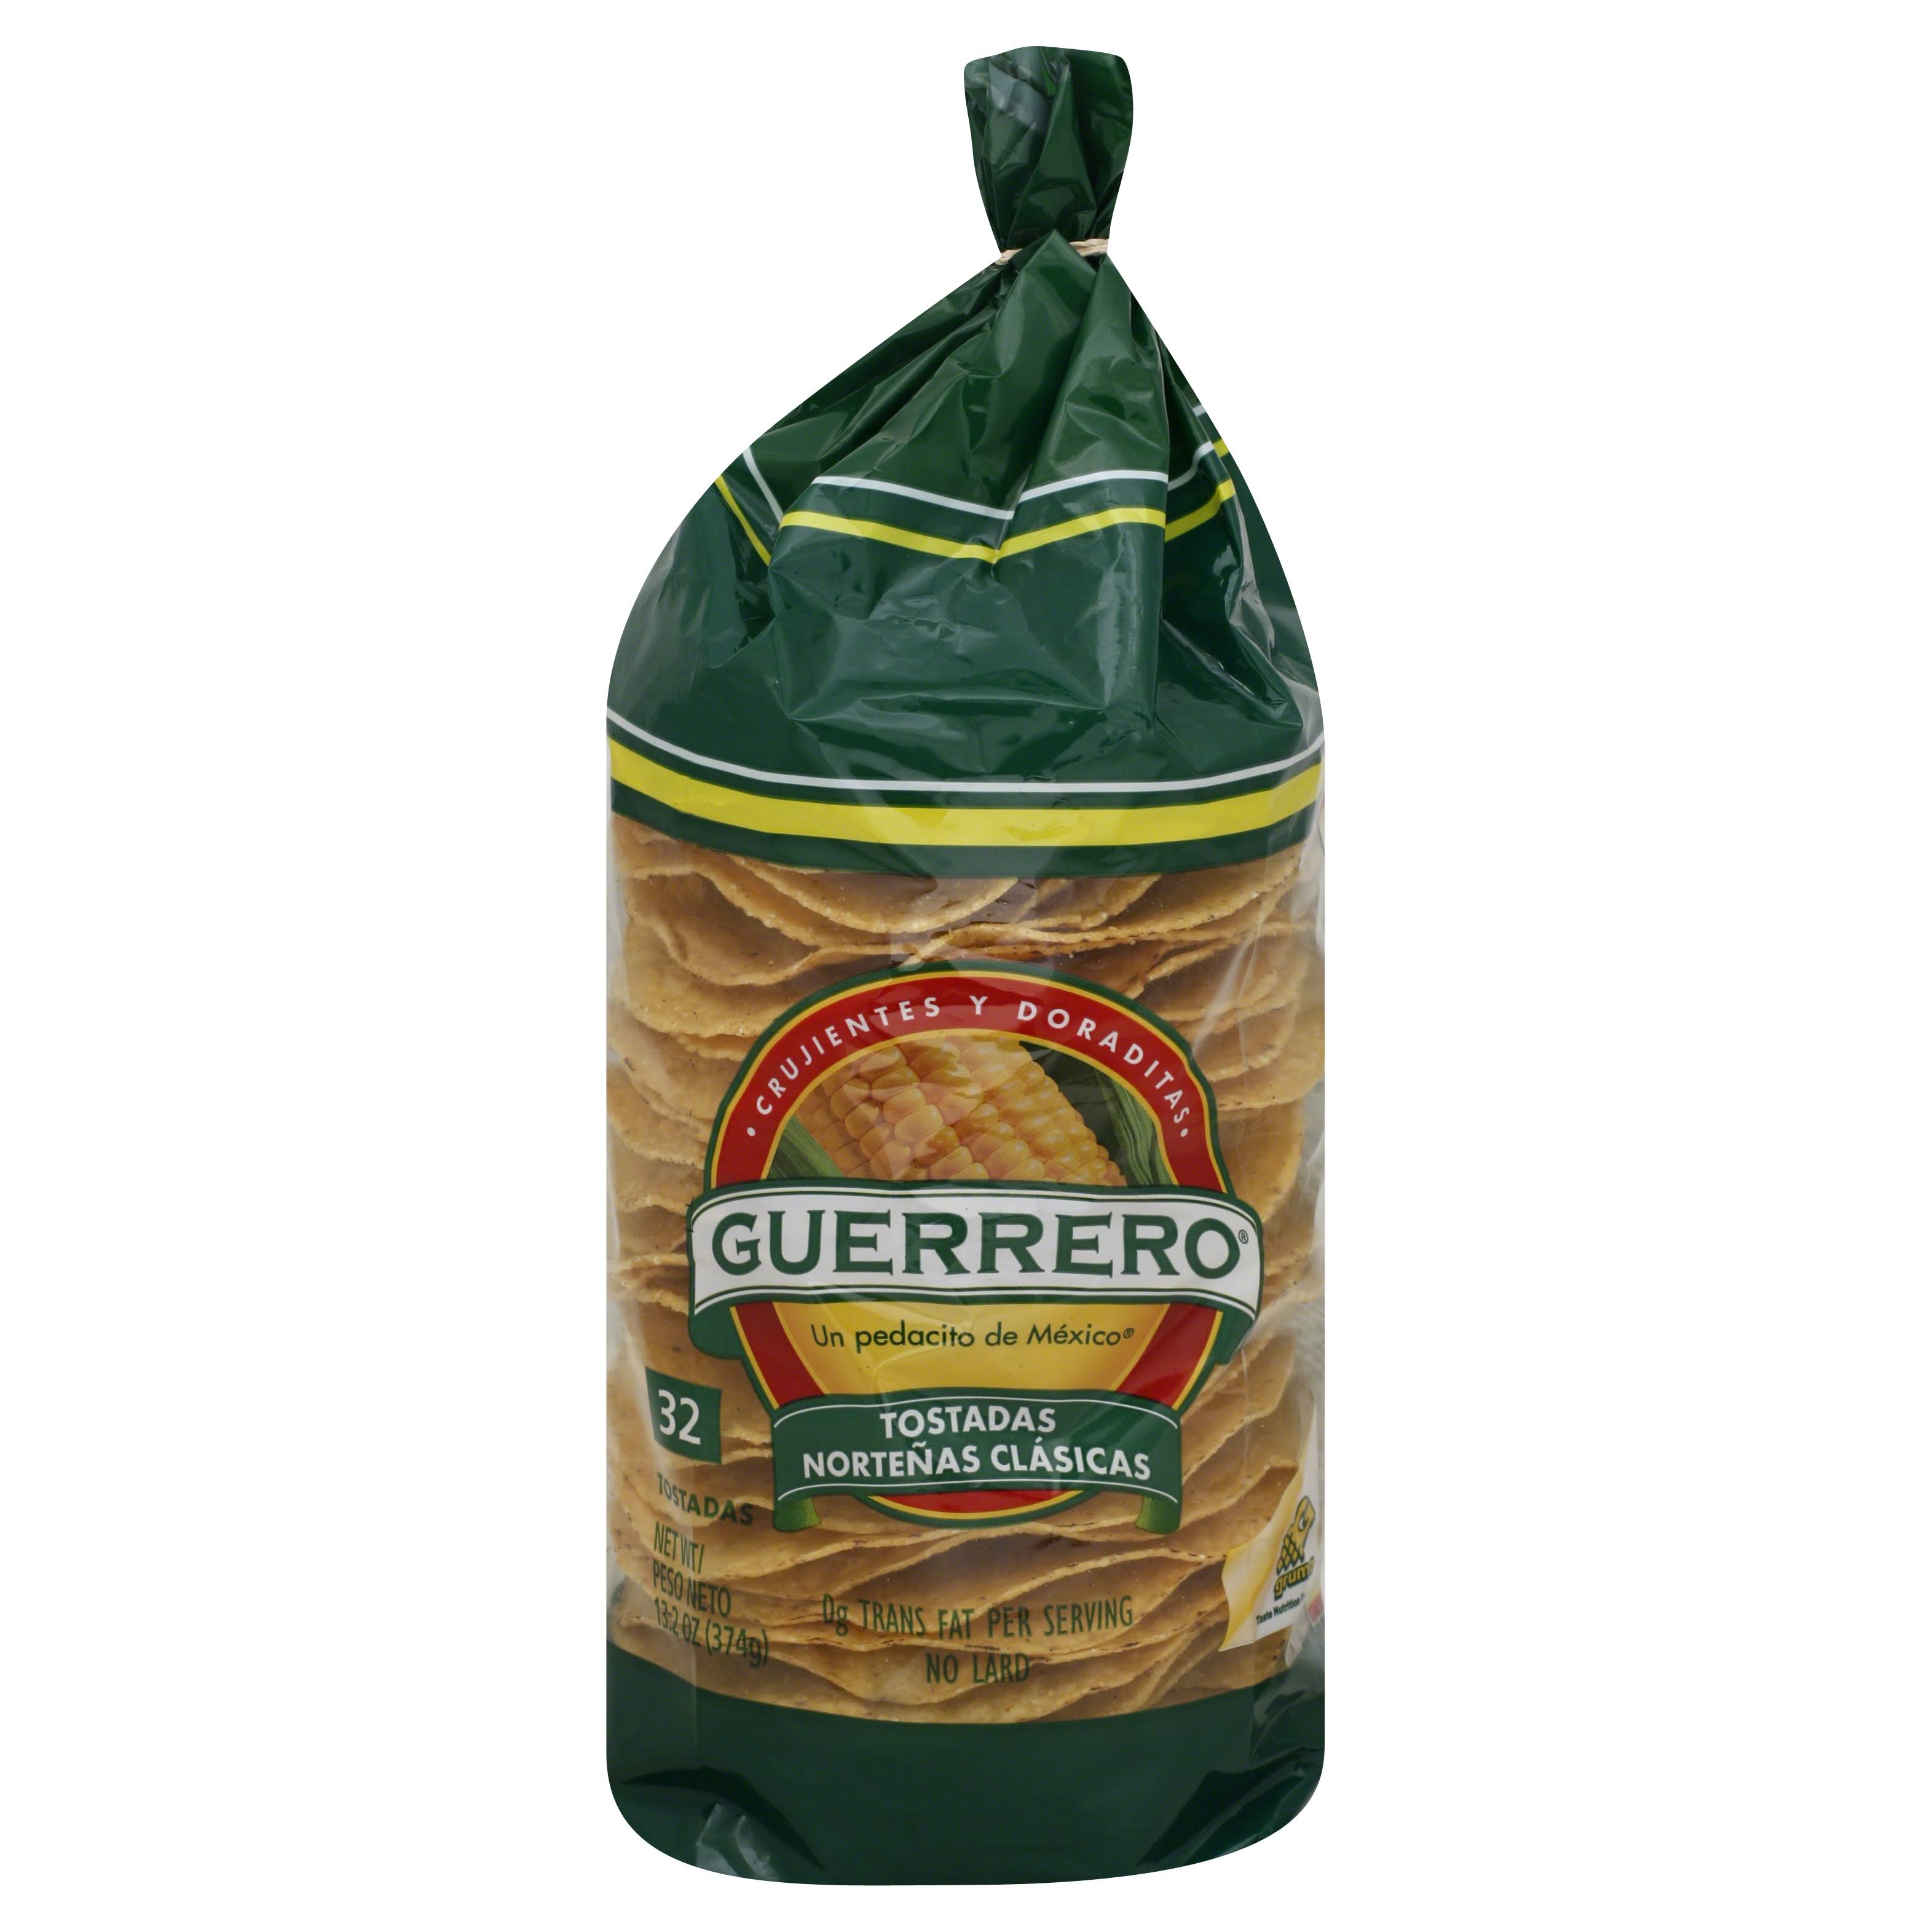 Guerrero Tostadas, Nortenas Clasicas - 30 tostadas, 12.37 oz